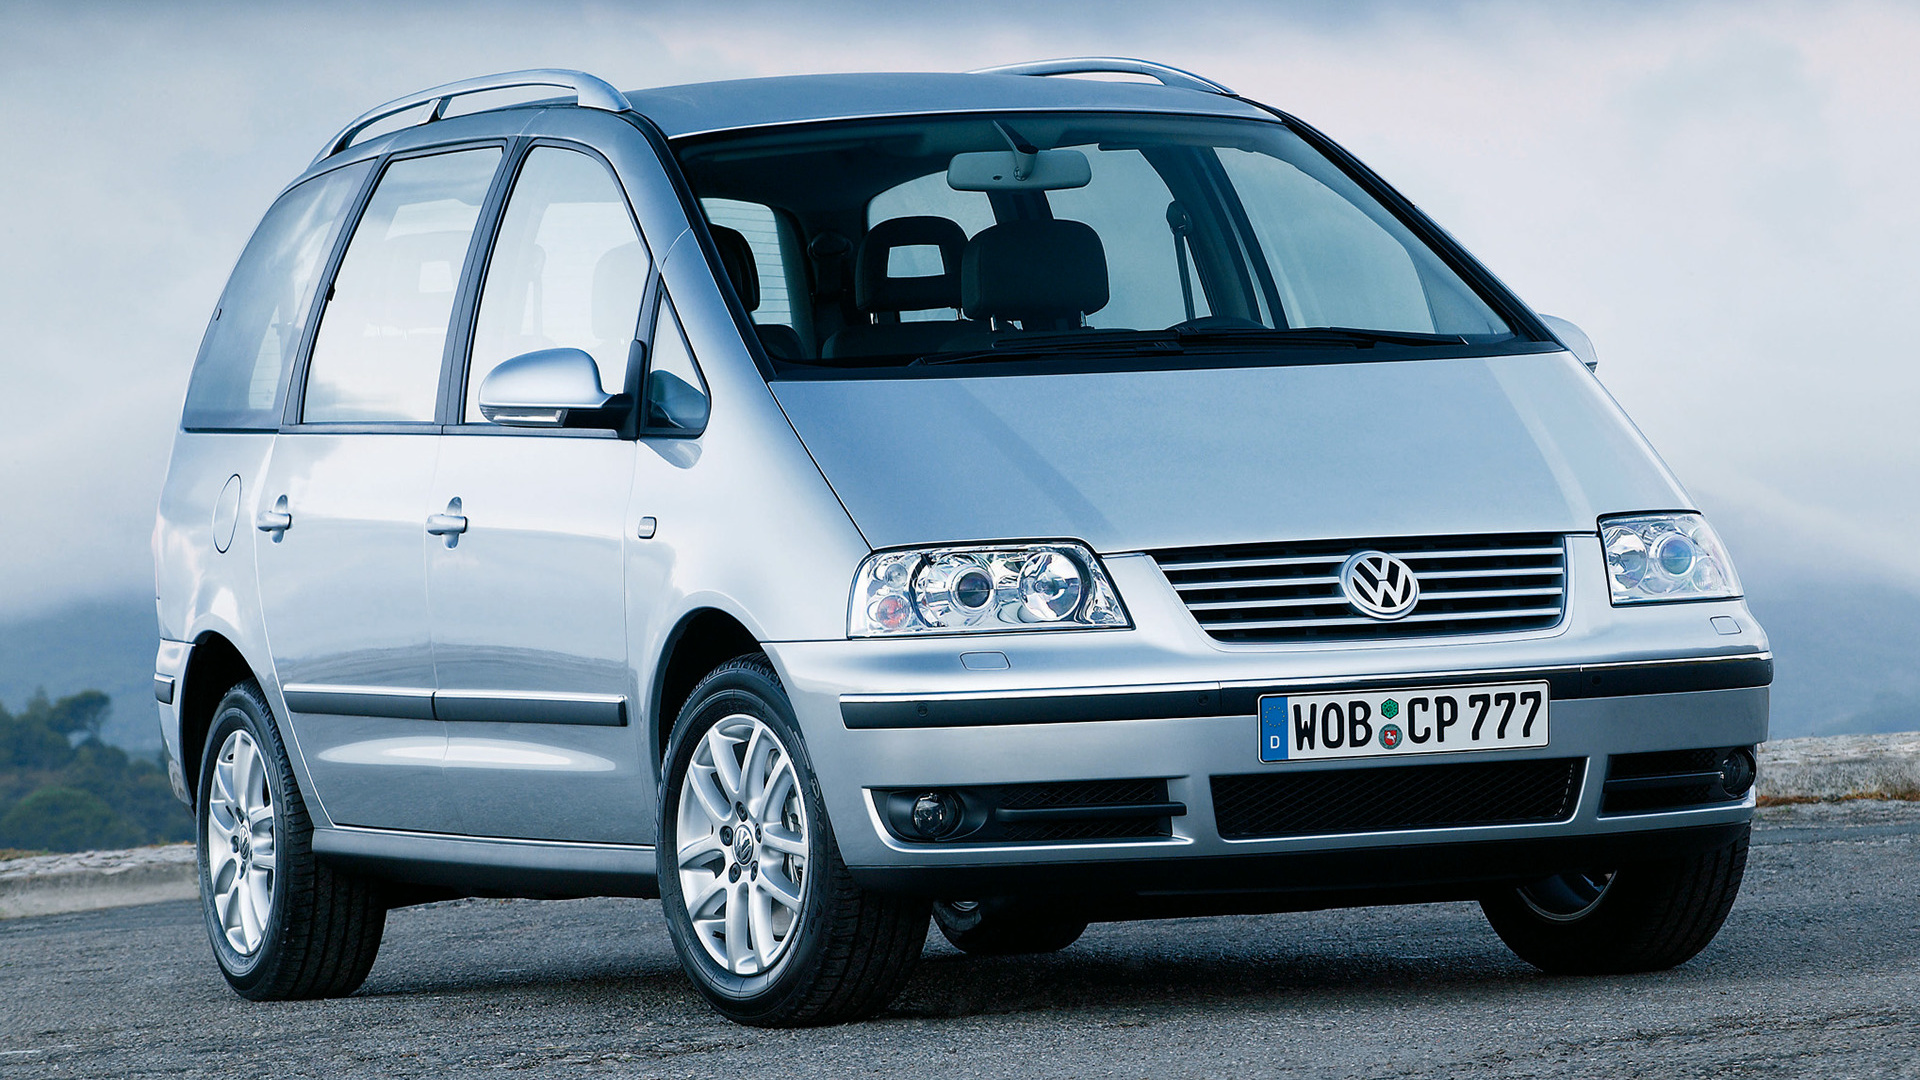 Volkswagen Sharan and HD Image